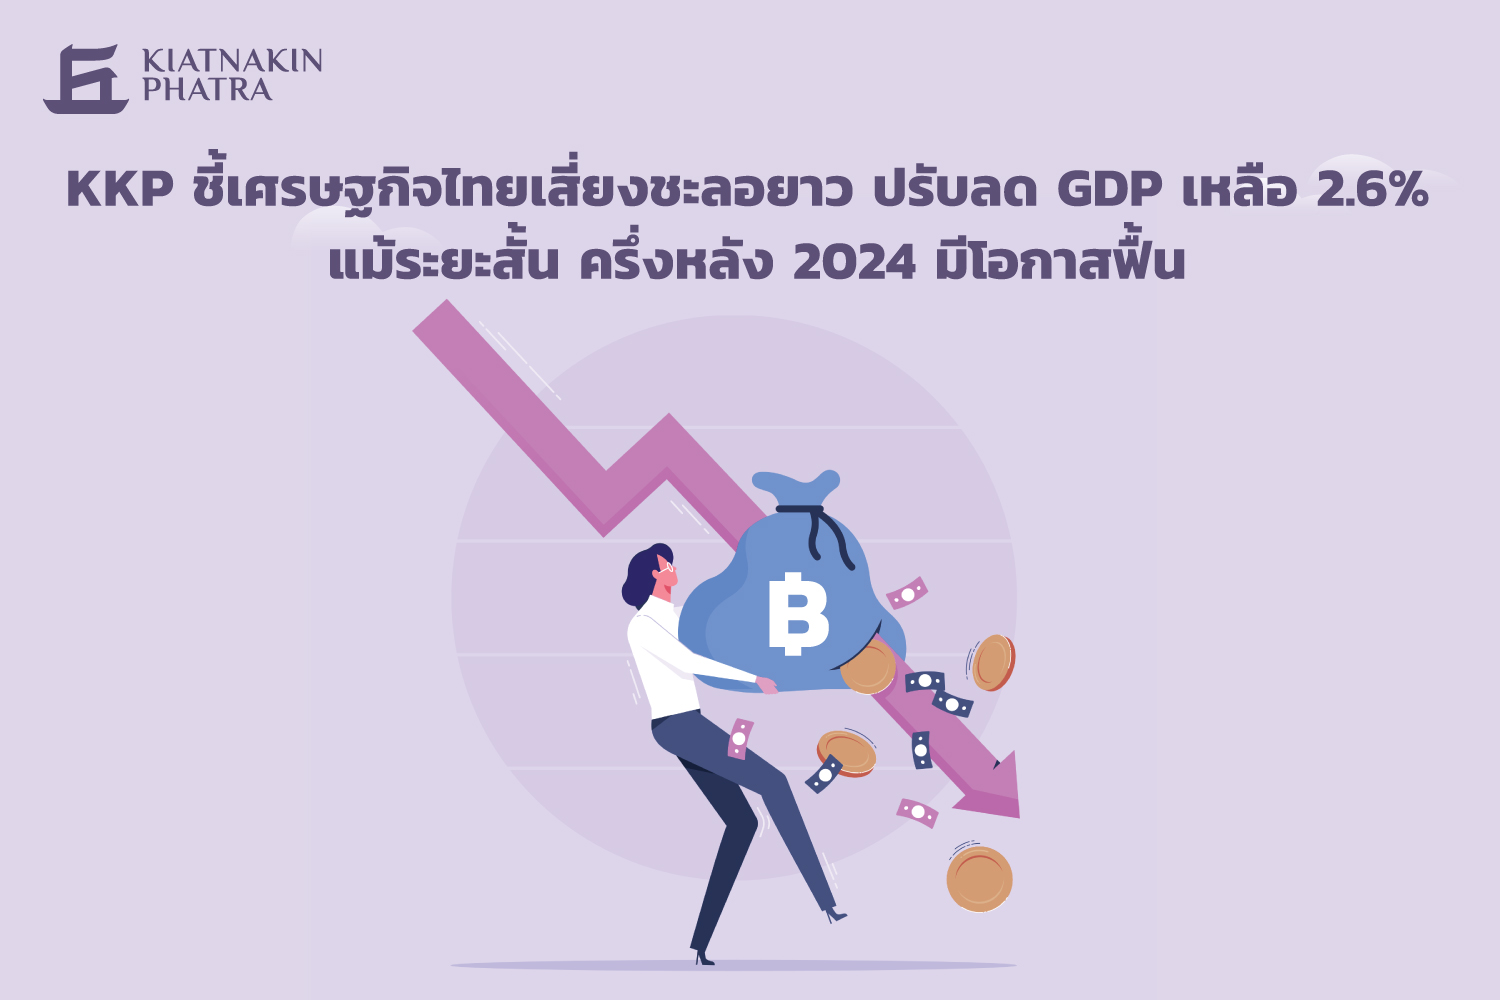 ชี้เศรษฐกิจไทยเสี่ยงชะลอยาว ปรับลด GDP เหลือ 2.6% แม้ระยะสั้น ครึ่งหลัง 2024 มีโอกาสฟื้น